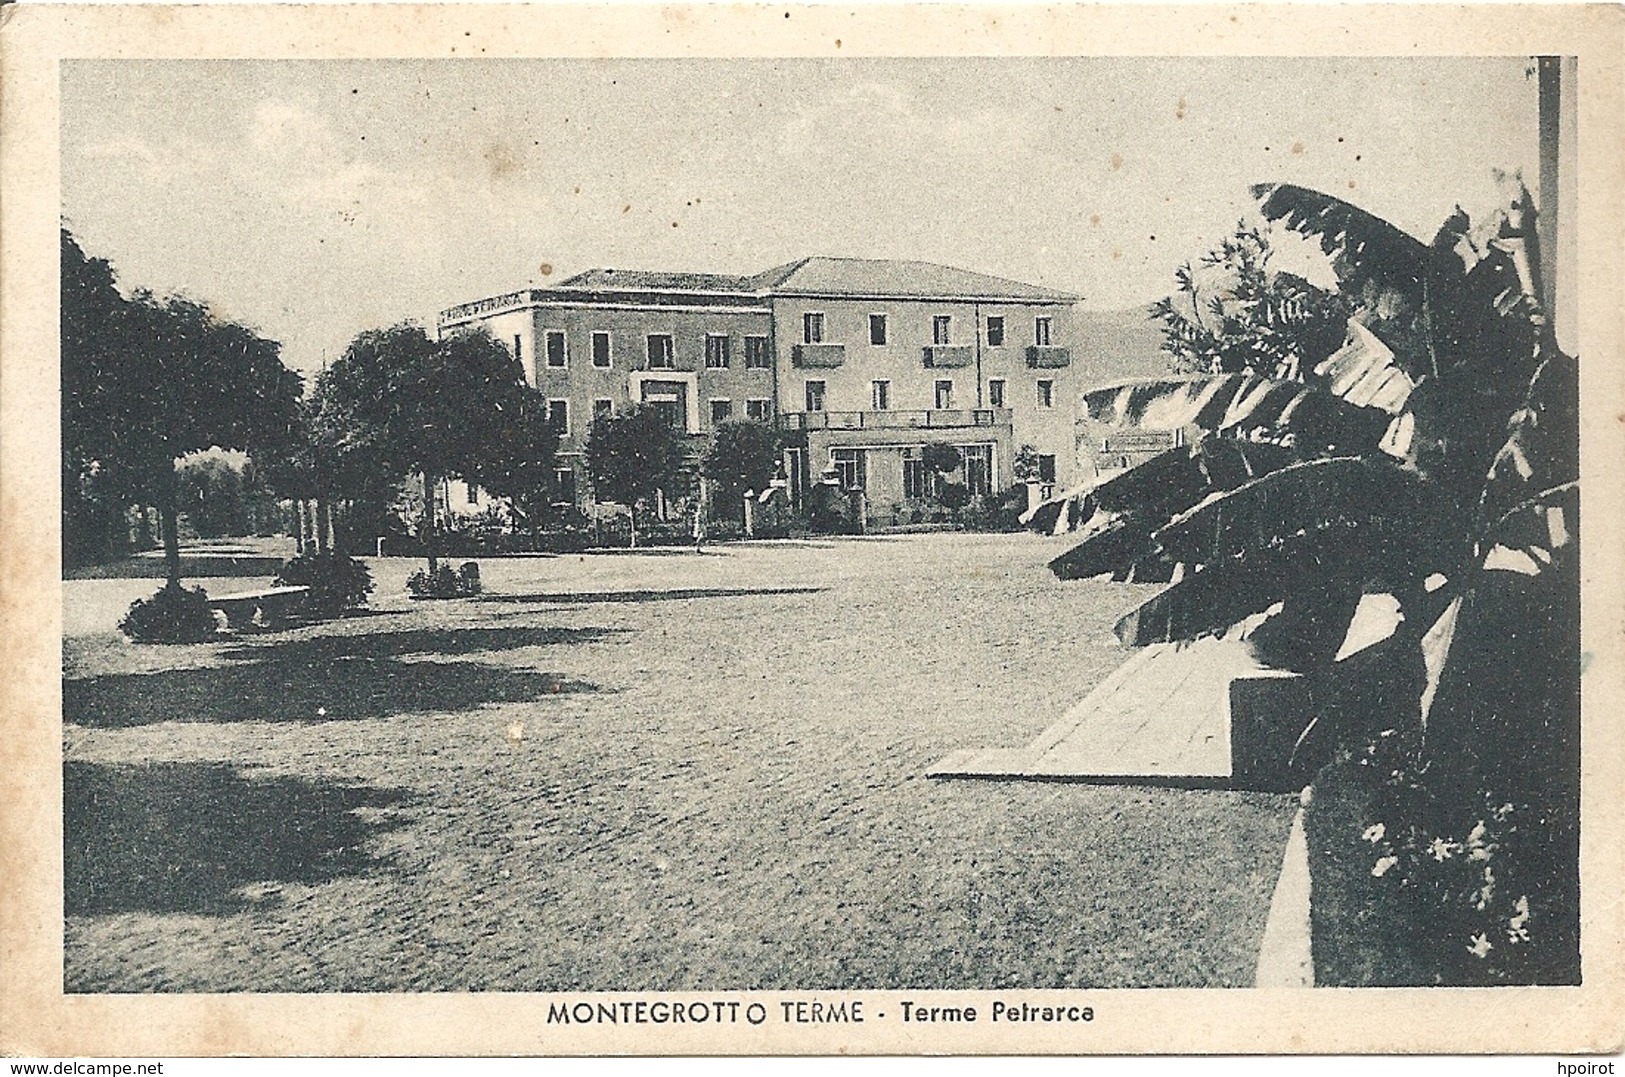 MONTEGROTTO TERME - TERME PETRARCA - FORMATO PICCOLO - VIAGGIATA 1949 - (rif. G06) - Padova (Padua)